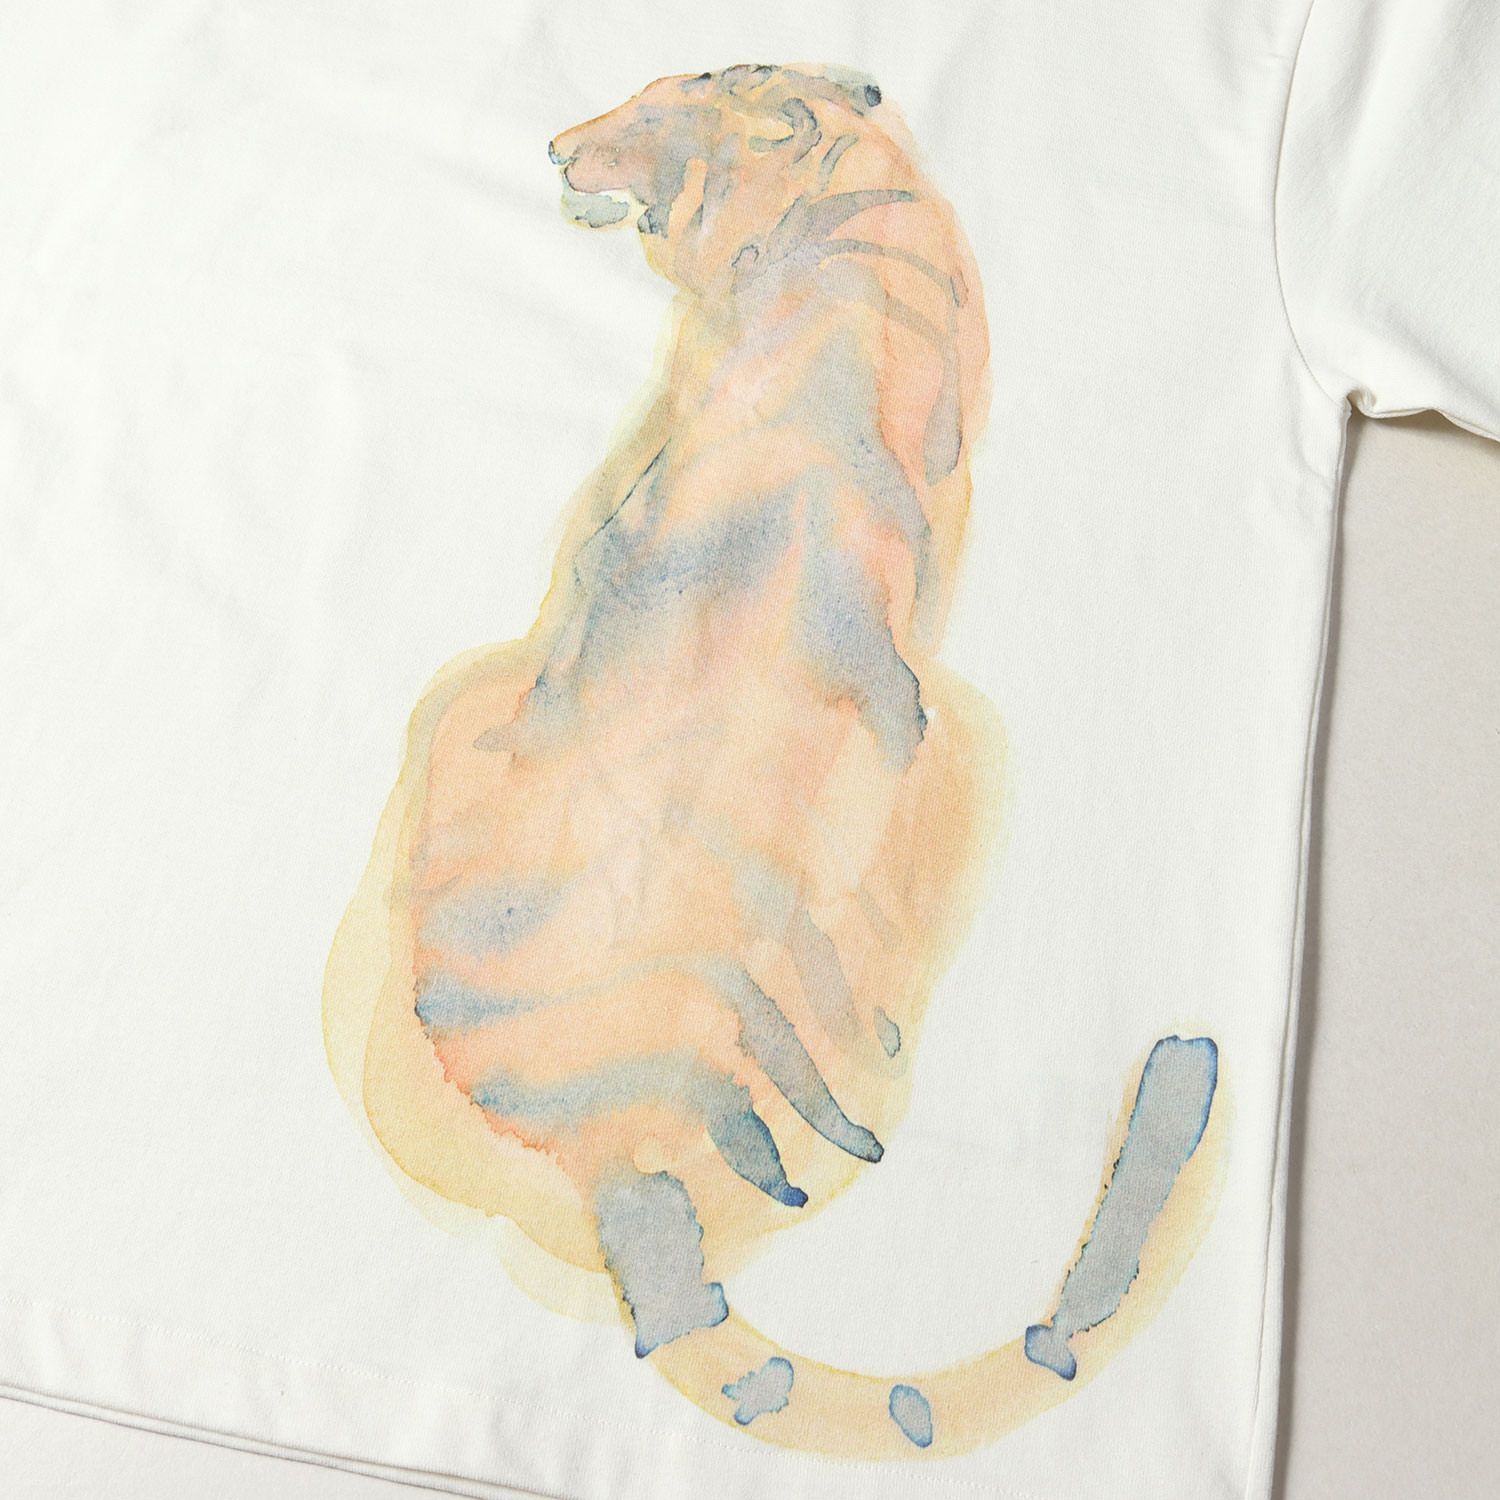 【美品袋付き】ジルサンダー タイガーコレクション 半袖Tシャツ クリーム